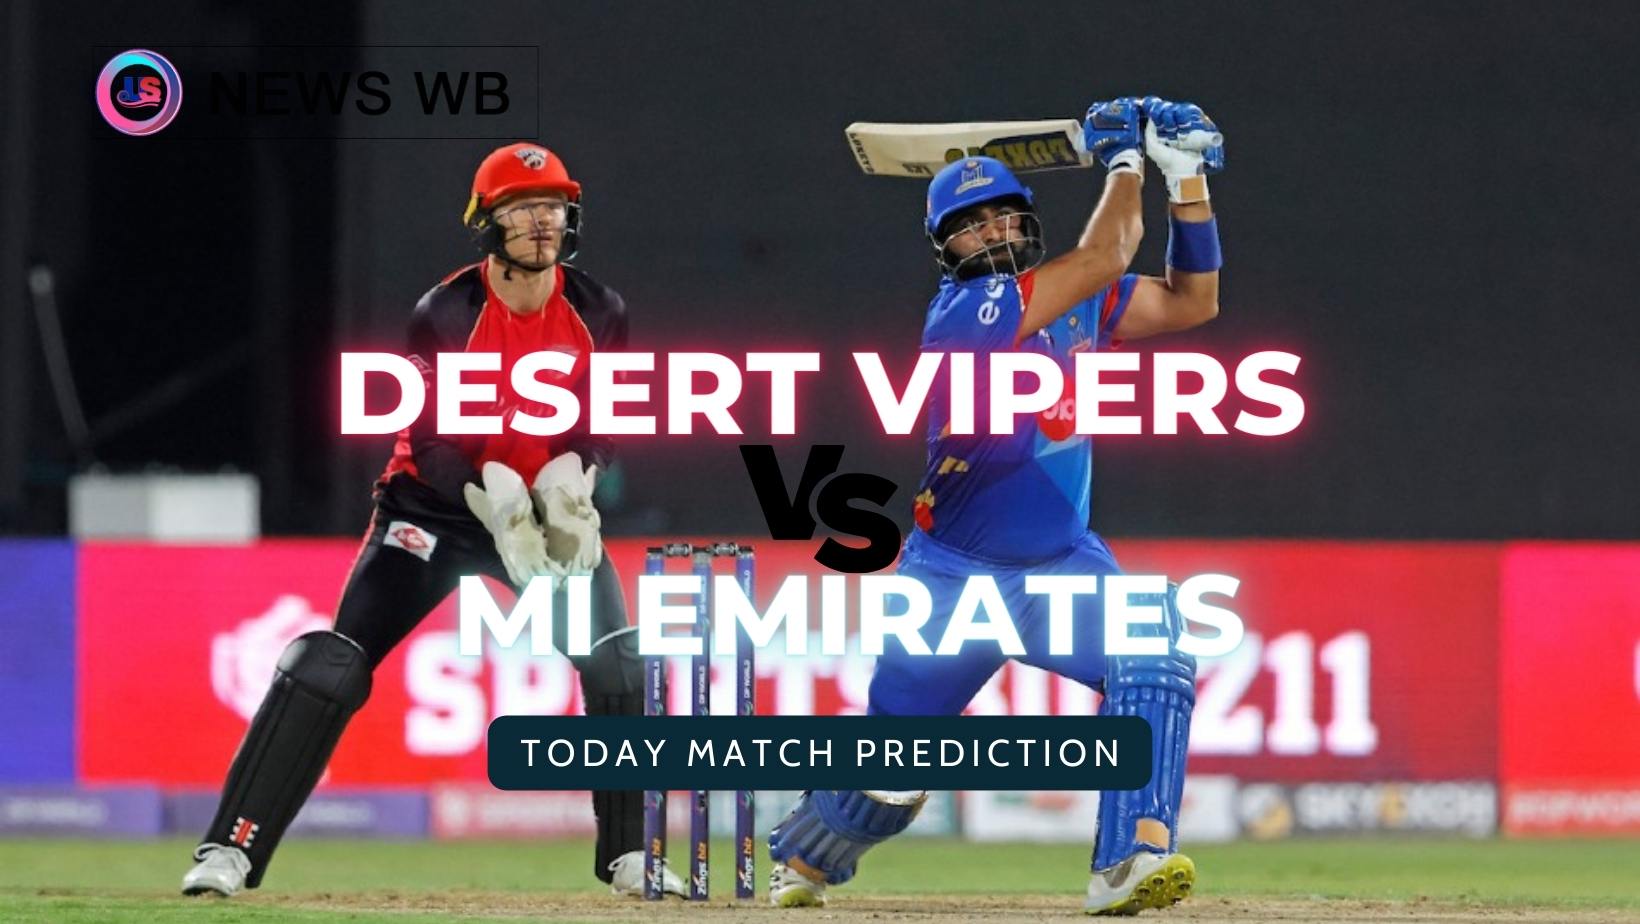 Today Match Prediction: MIE vs DV Dream11 Team, Mi Emirates vs Desert Vipers 21st Match, Who Will Win?